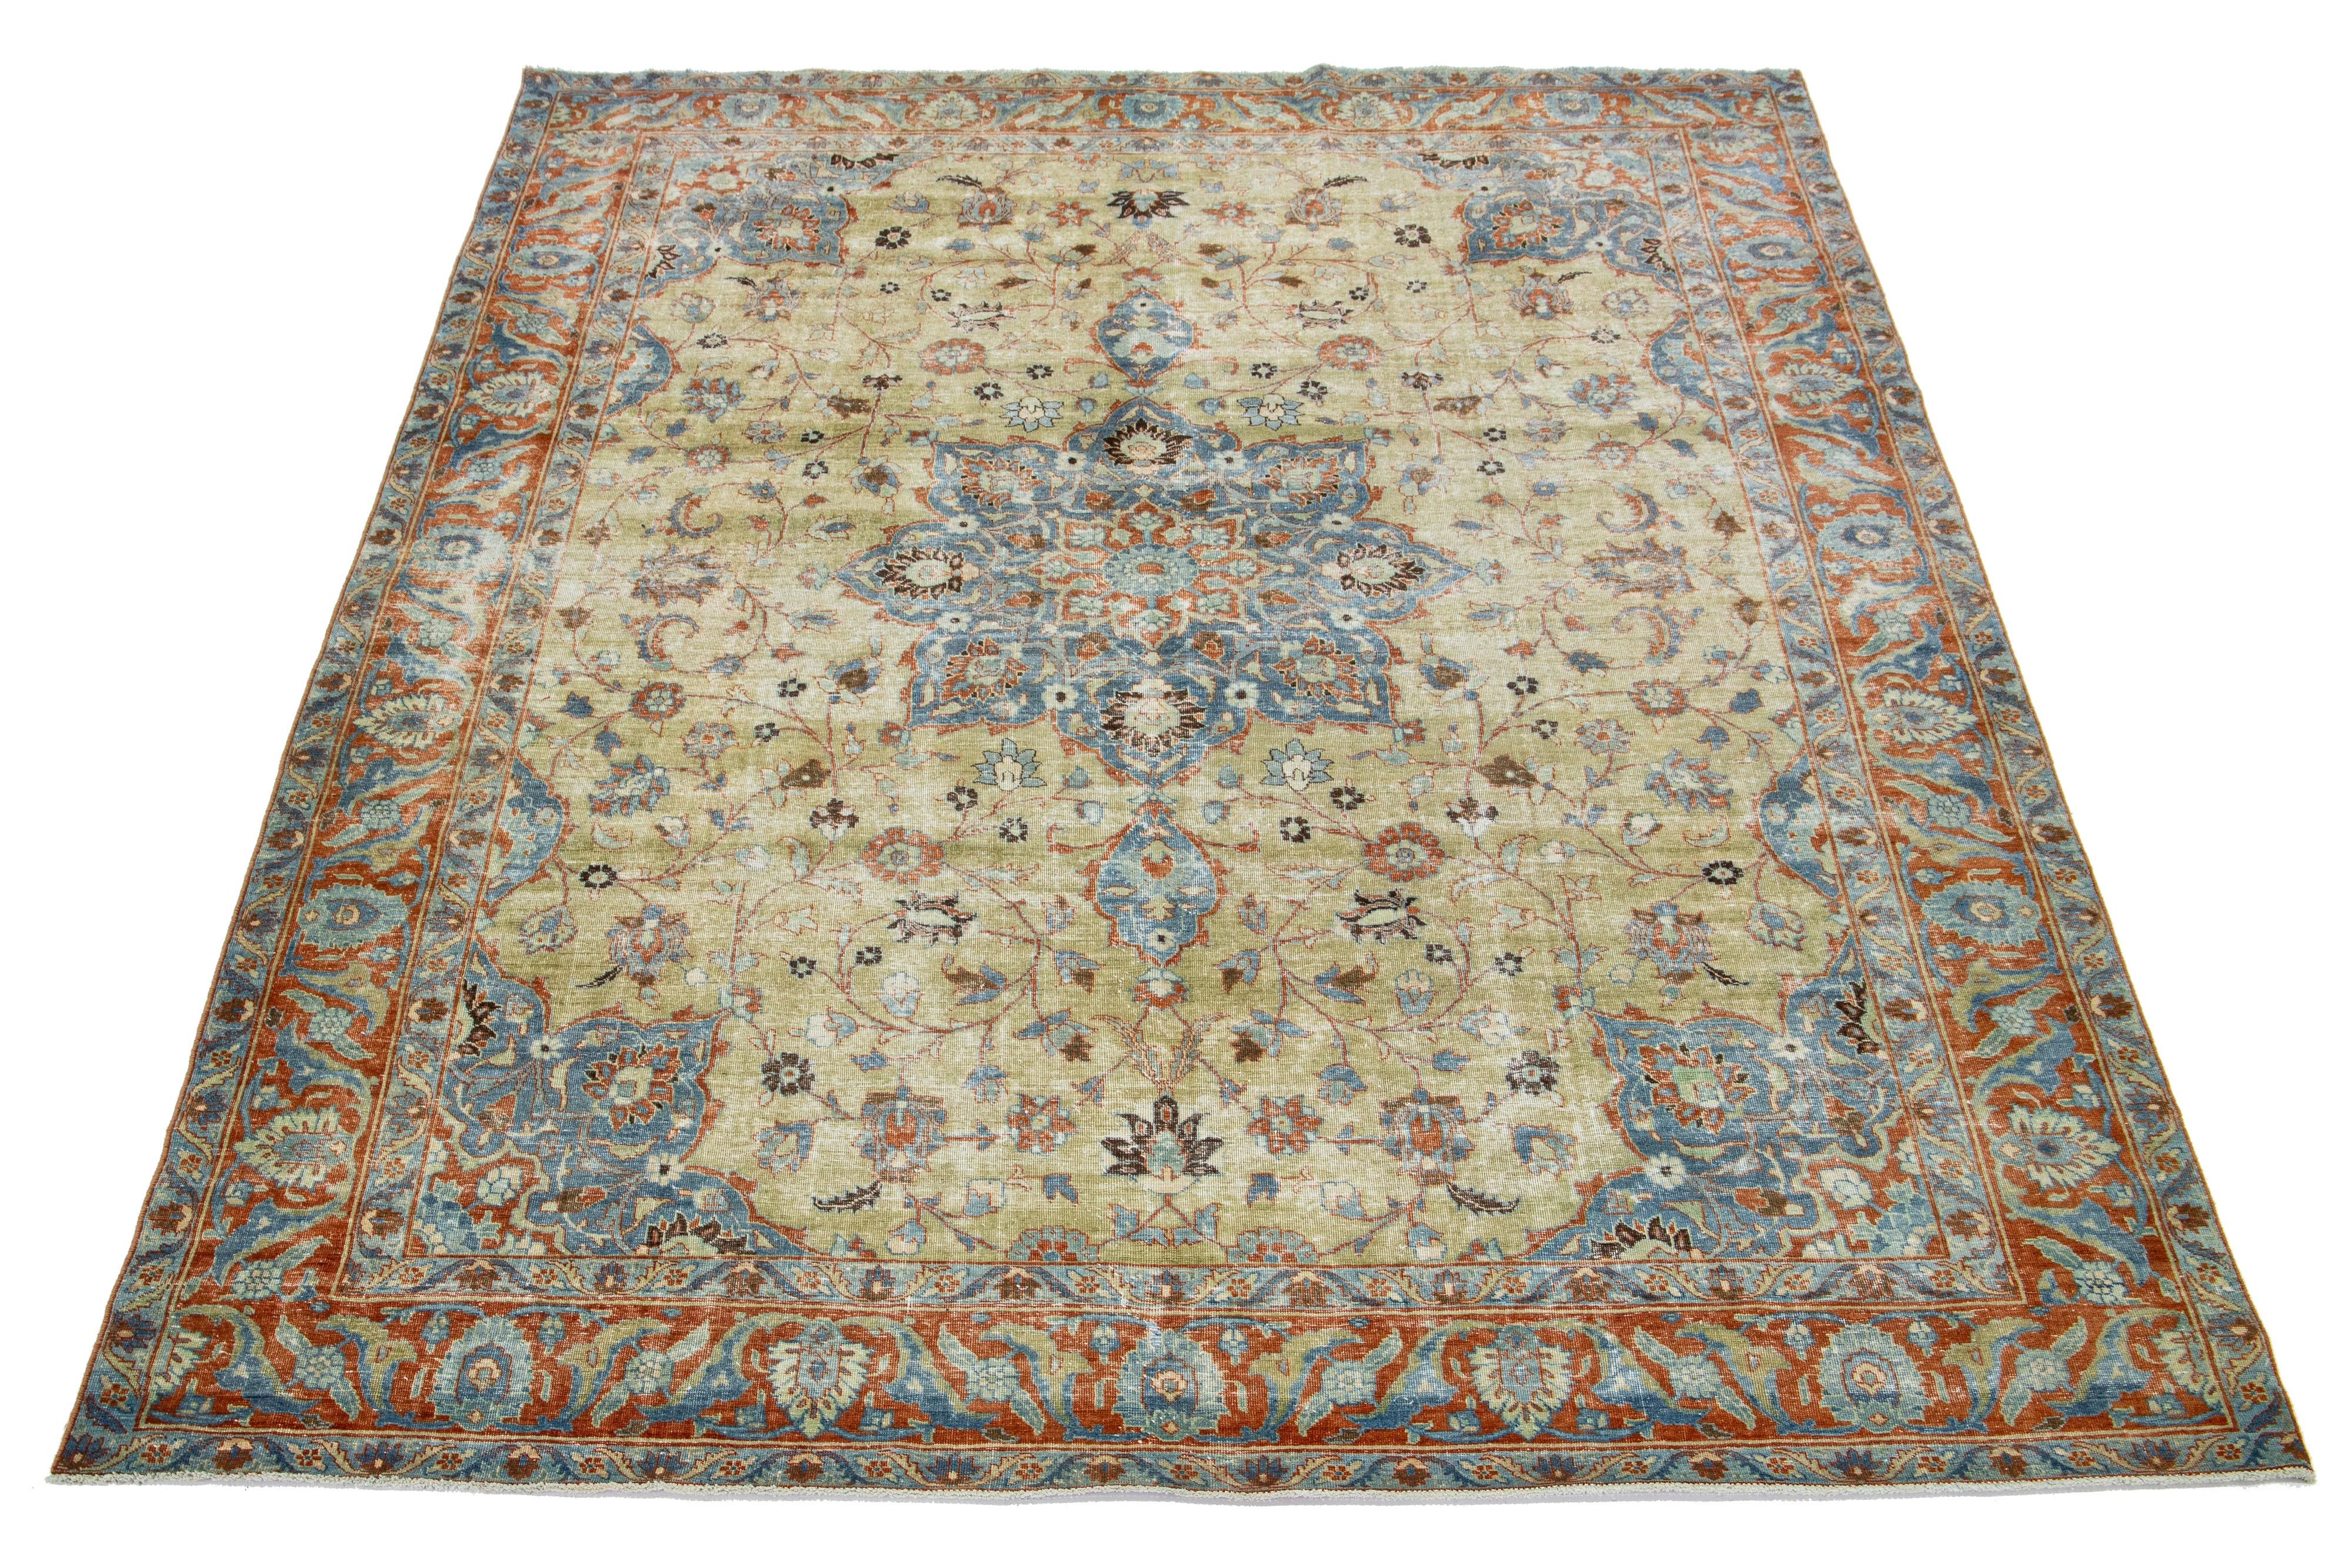 Dieser wunderschöne handgefertigte Teppich aus persischer Täbriz-Wolle zeigt ein klassisches Blumenmuster. Der Kontrast, der durch den beigefarbenen Hintergrund entsteht, hebt das florale Medaillonmuster in Blau- und Orangetönen hervor.

Dieser